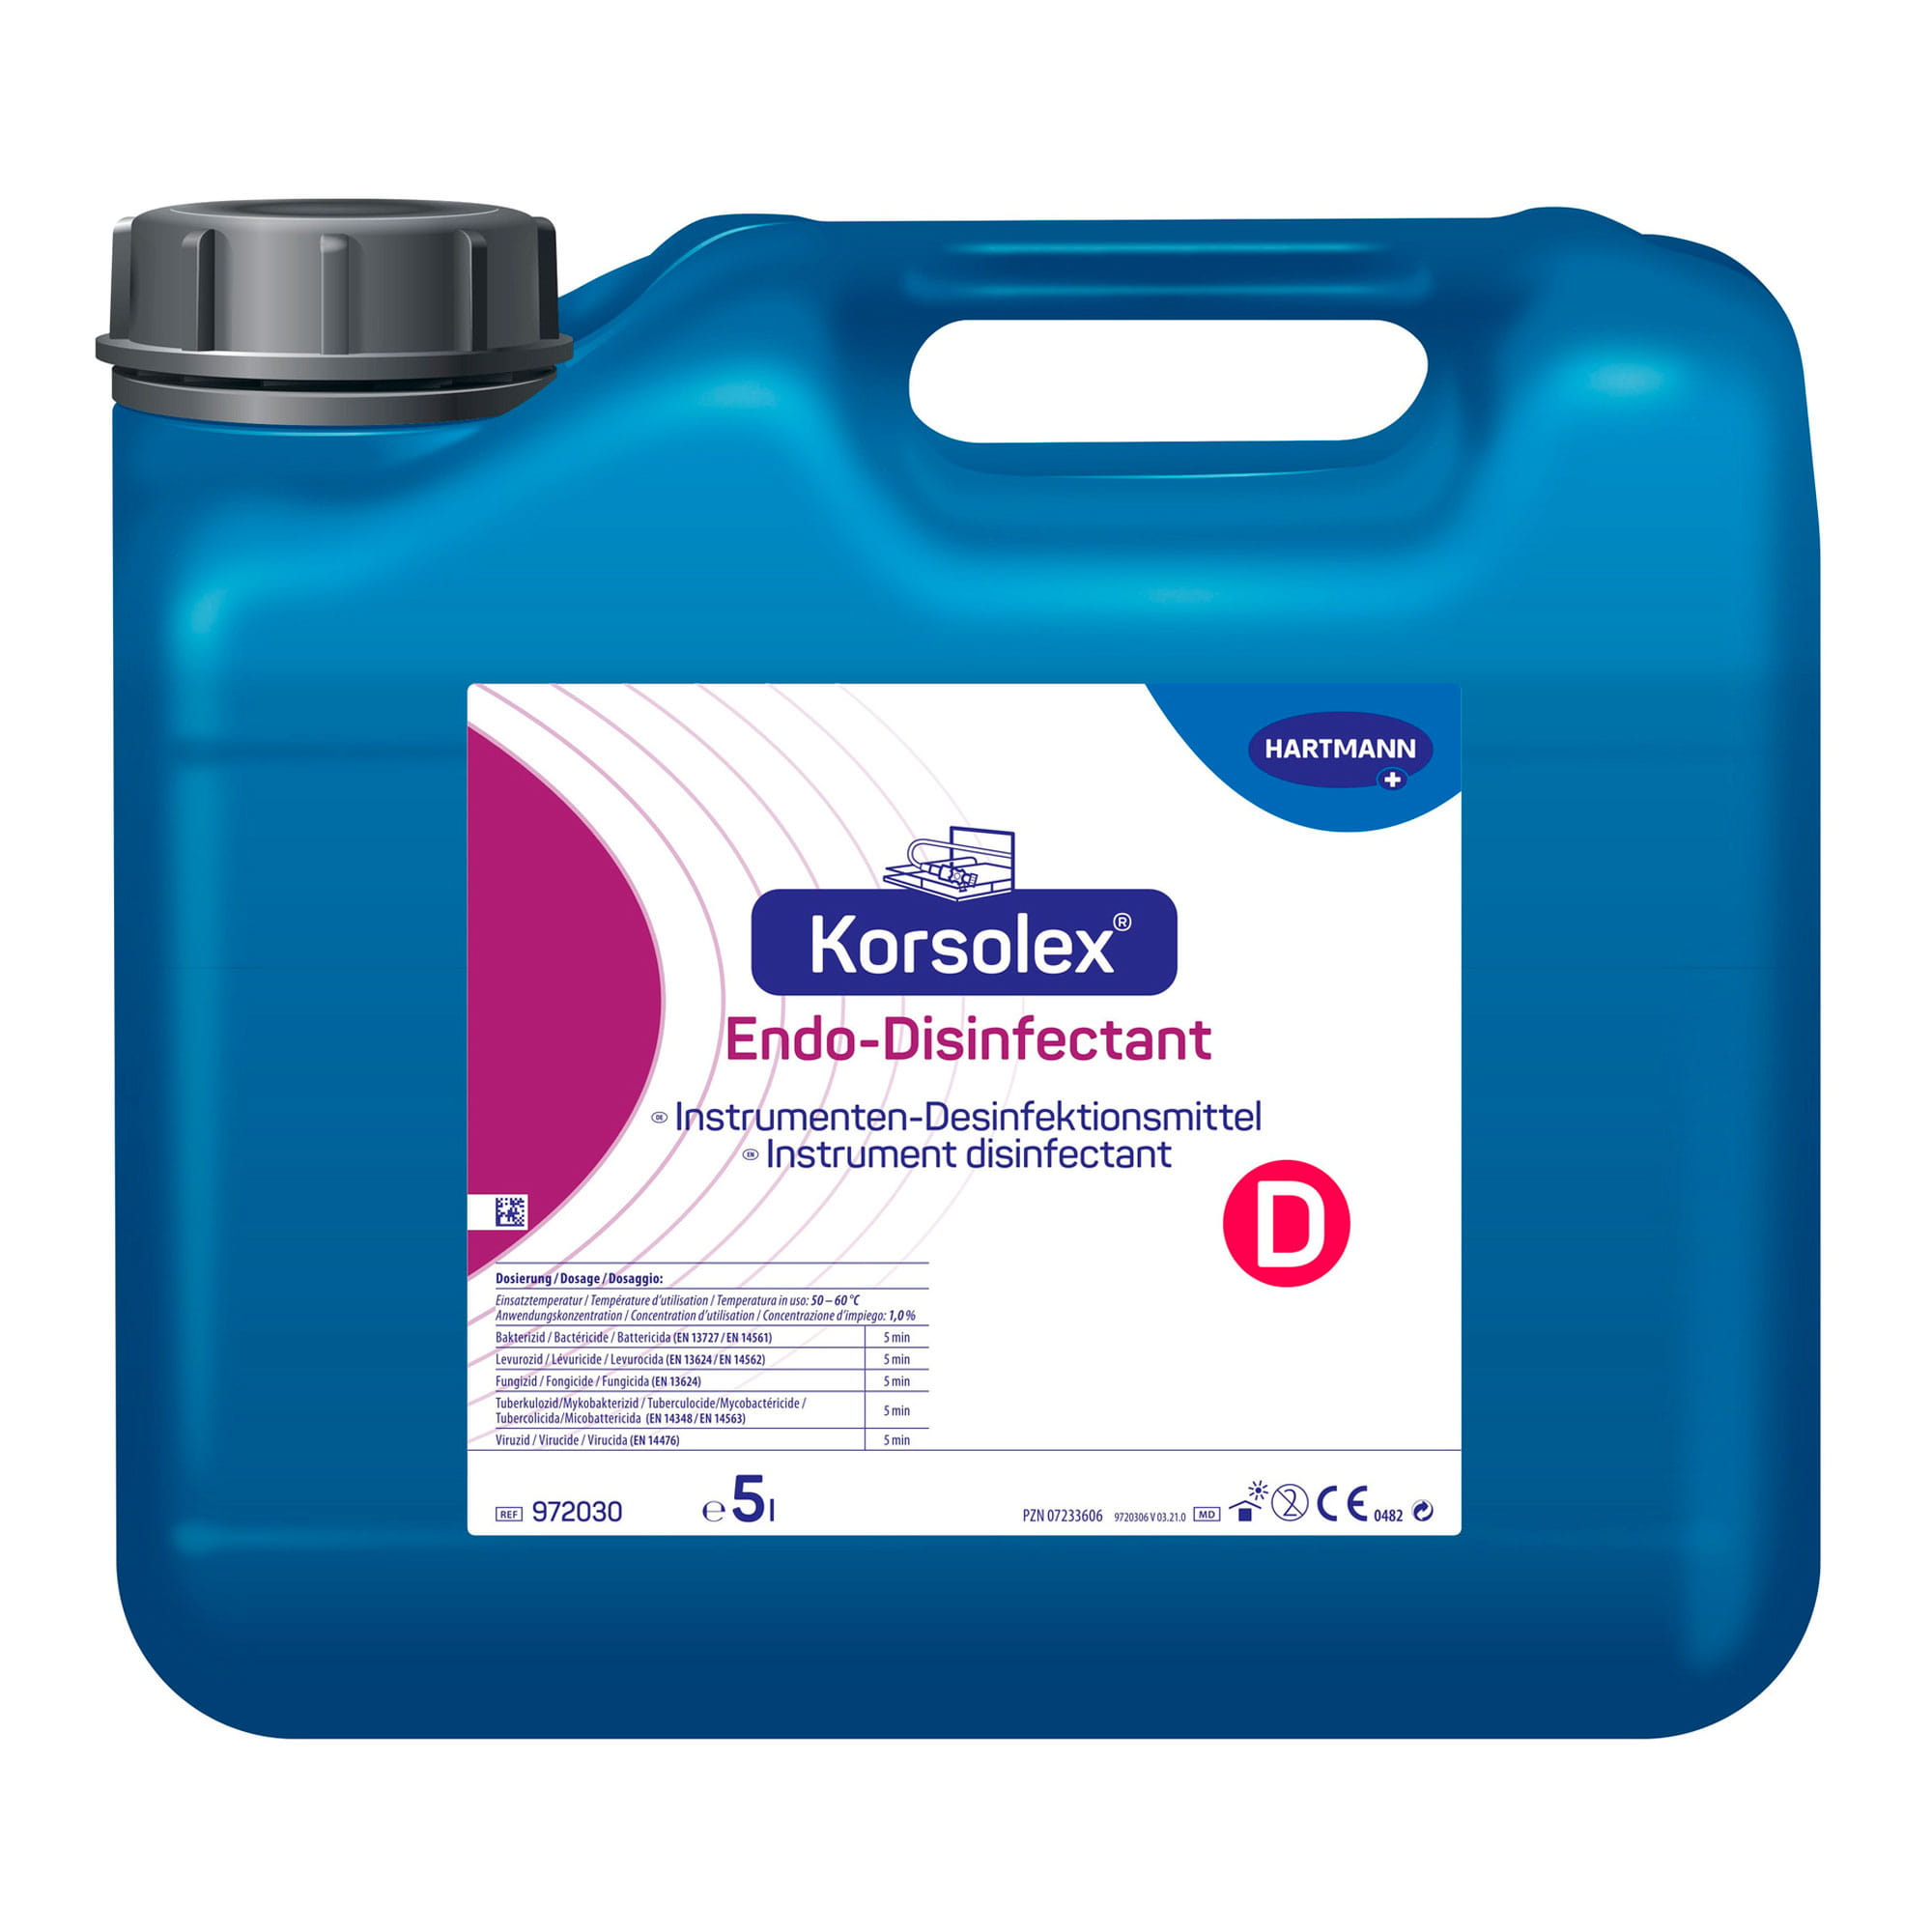 Bode Korsolex Endo-Disinfectant Desinfektionsmittel Endoskope 5 Liter Kanister 972030_1